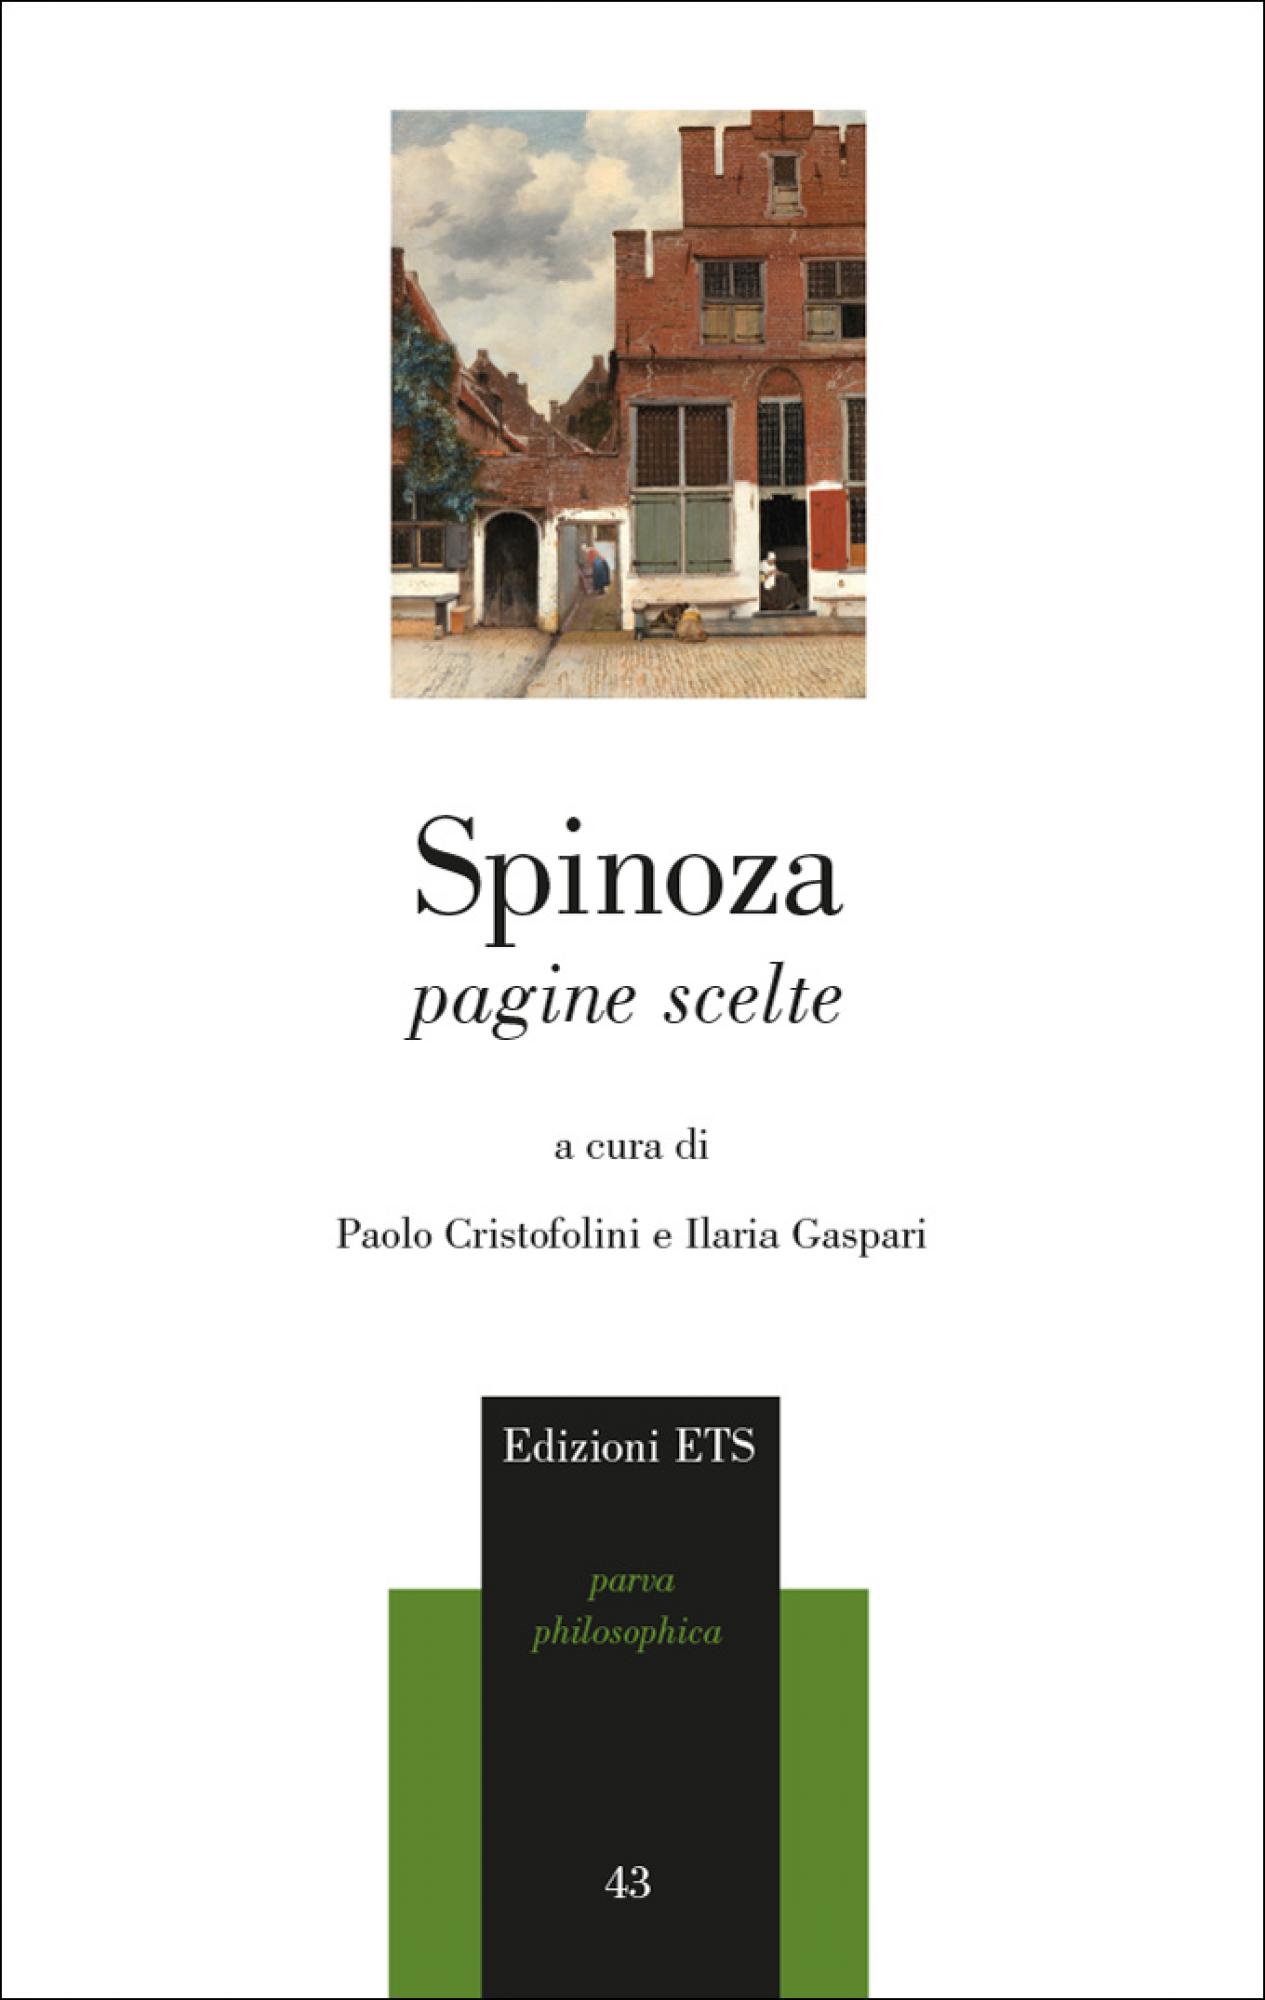 Etica - Baruch Spinoza - Paolo Cristofolini - Paolo Cristofolini, Ed. ETS